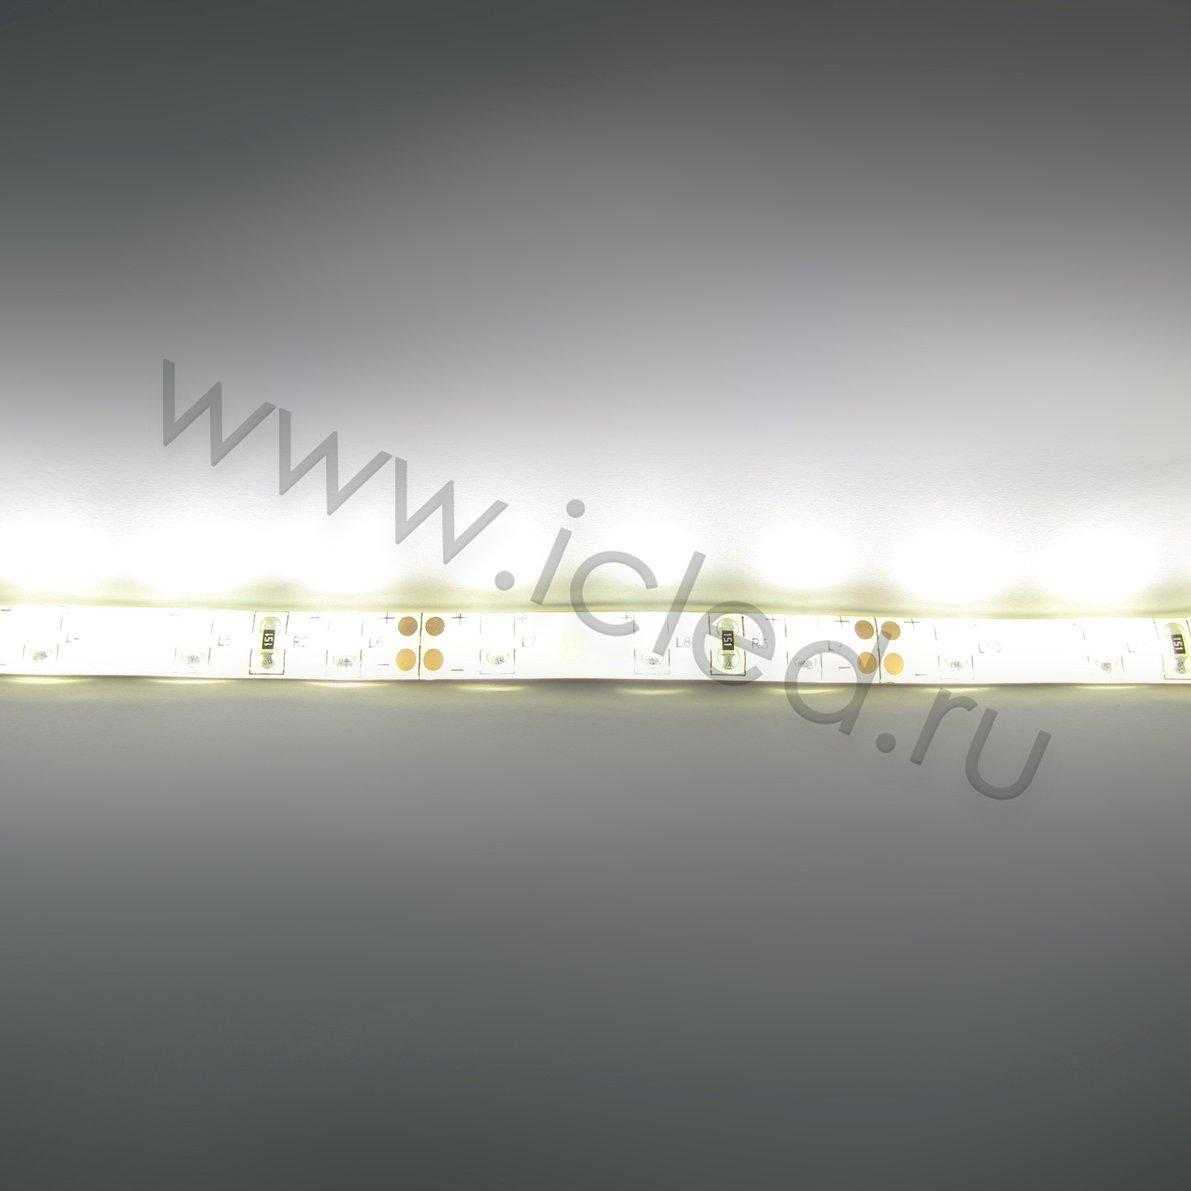 Влагозащищенные светодиодные ленты Светодиодная лента LUX class, 3528, 60 led/m, Warm White,12V, IP65 Icled